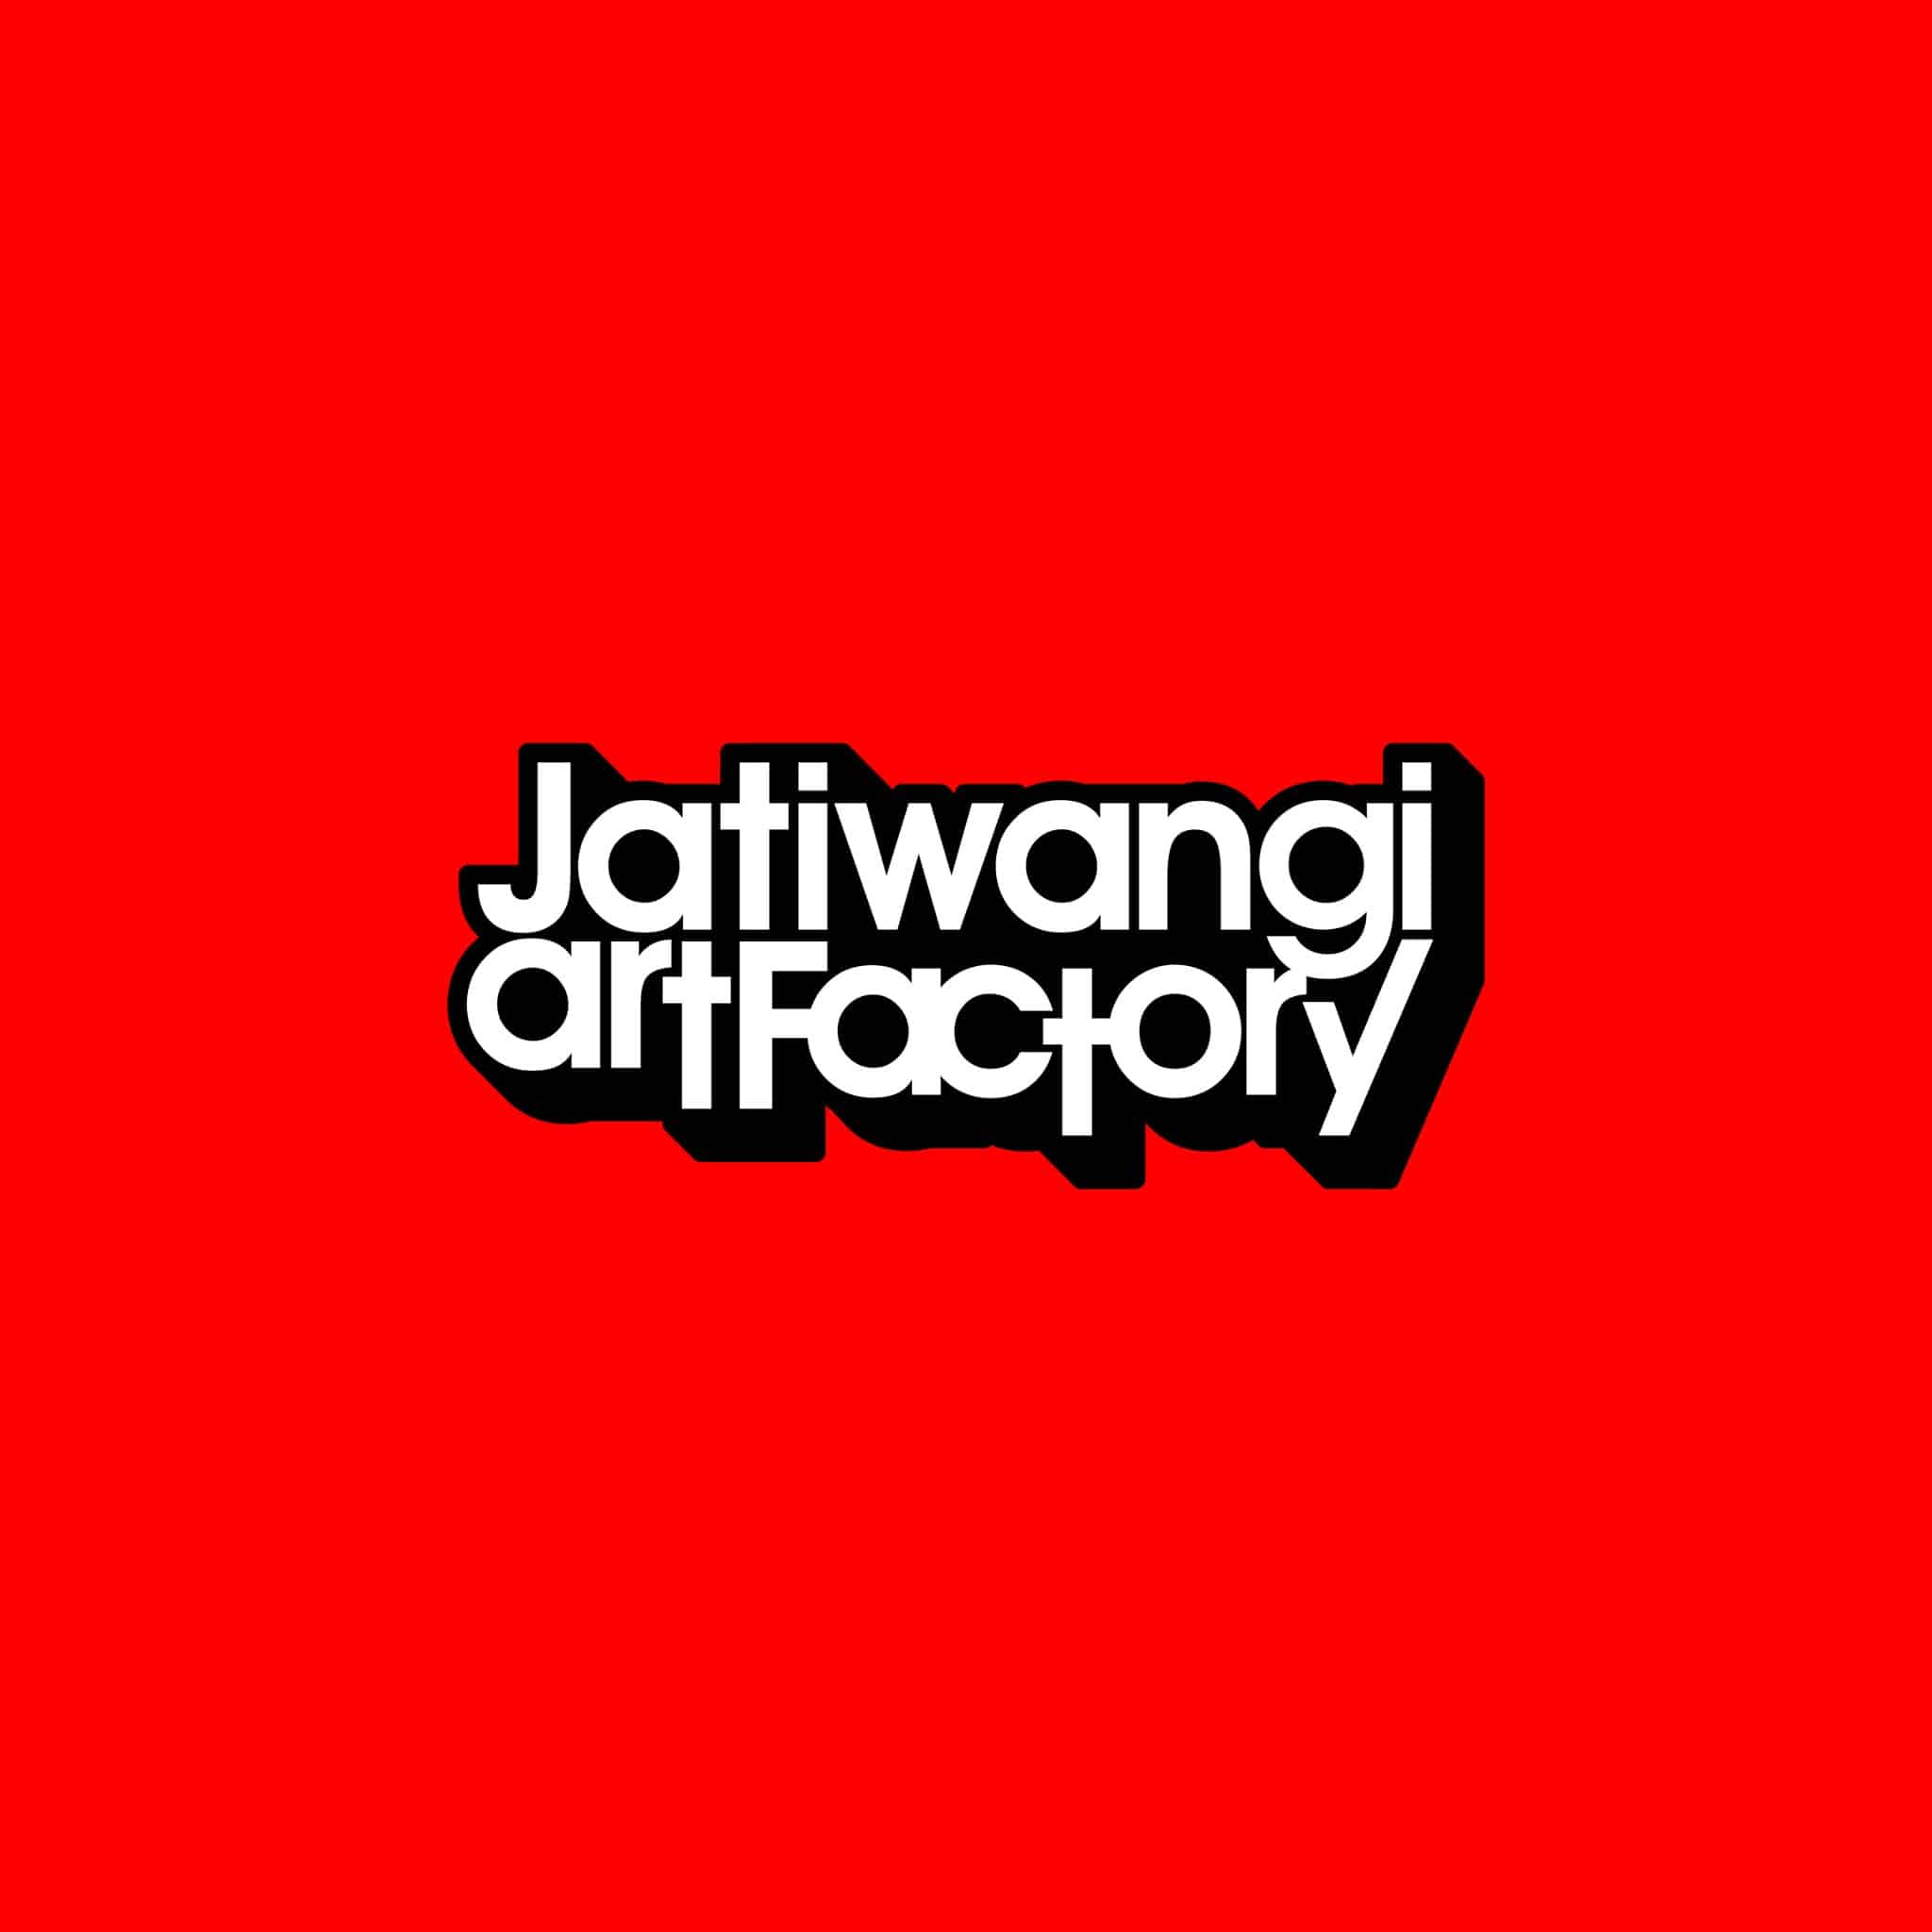 Jatiwangi art Factory (JaF) logo